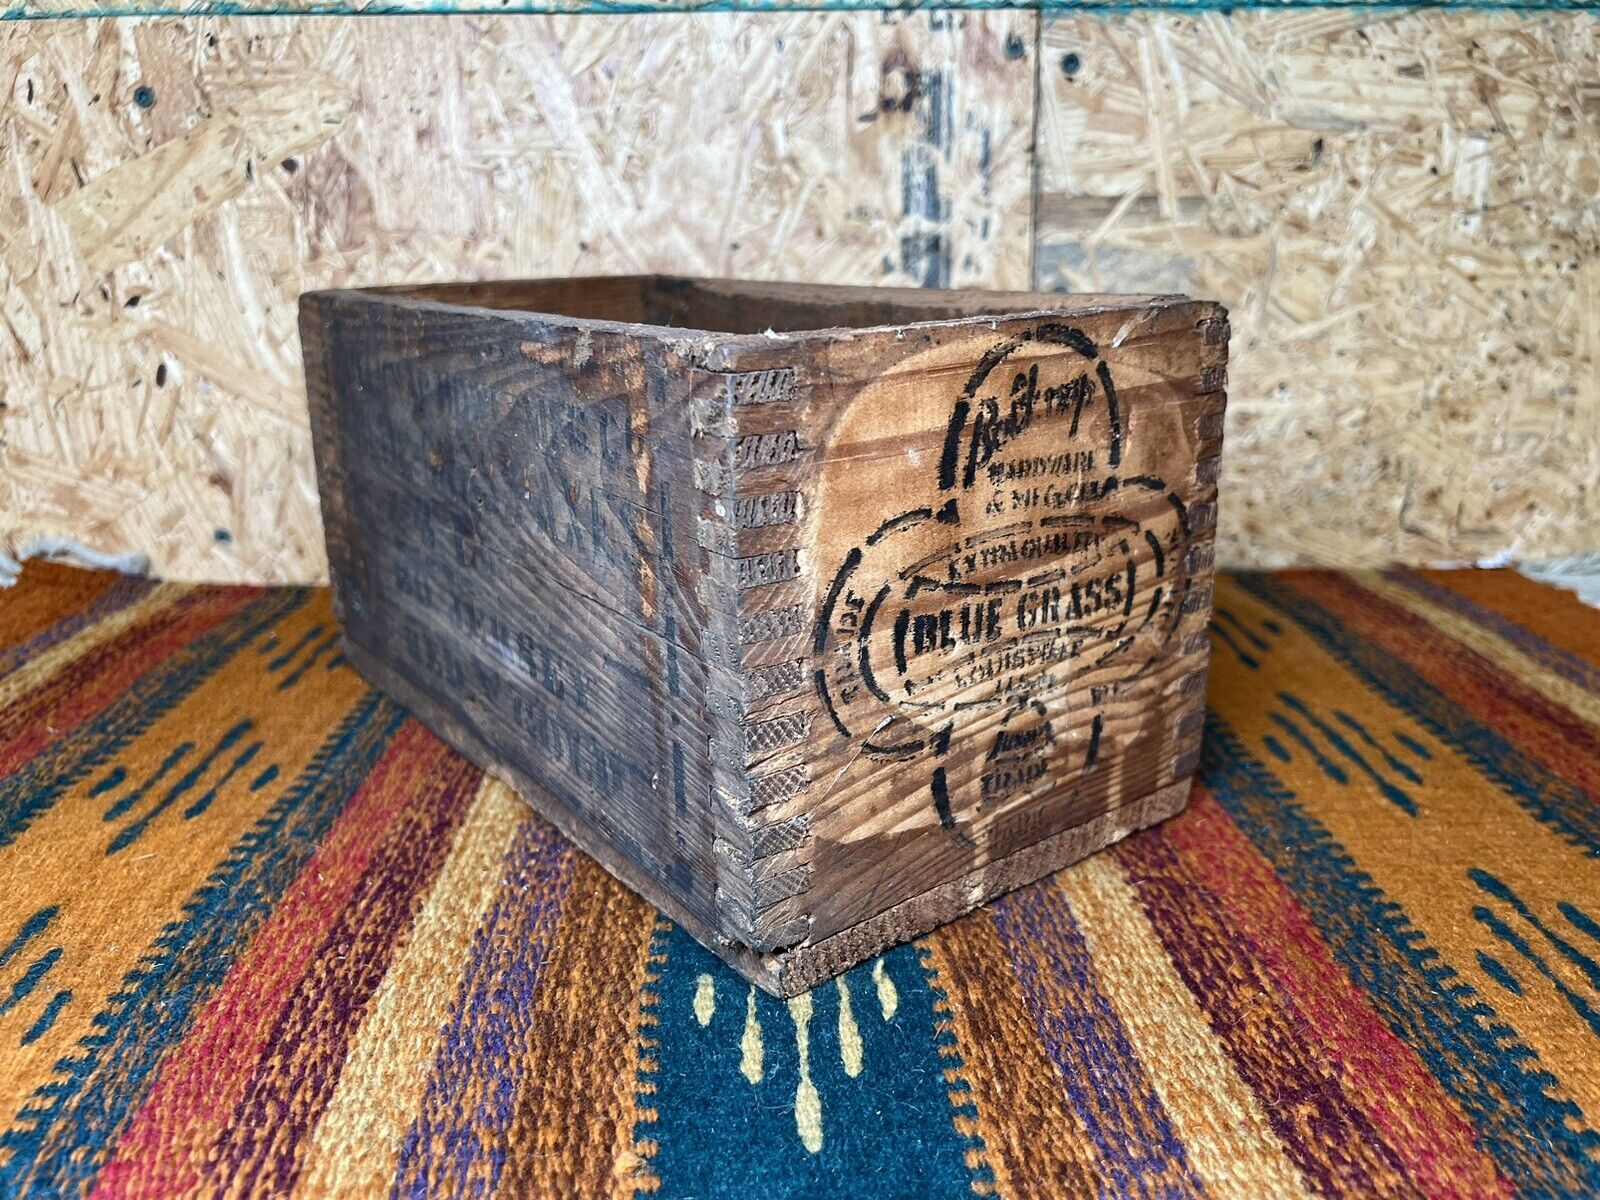 RARE Belknap Blue Grass Axes Wooden Crate Box Kentucky Advertisement 